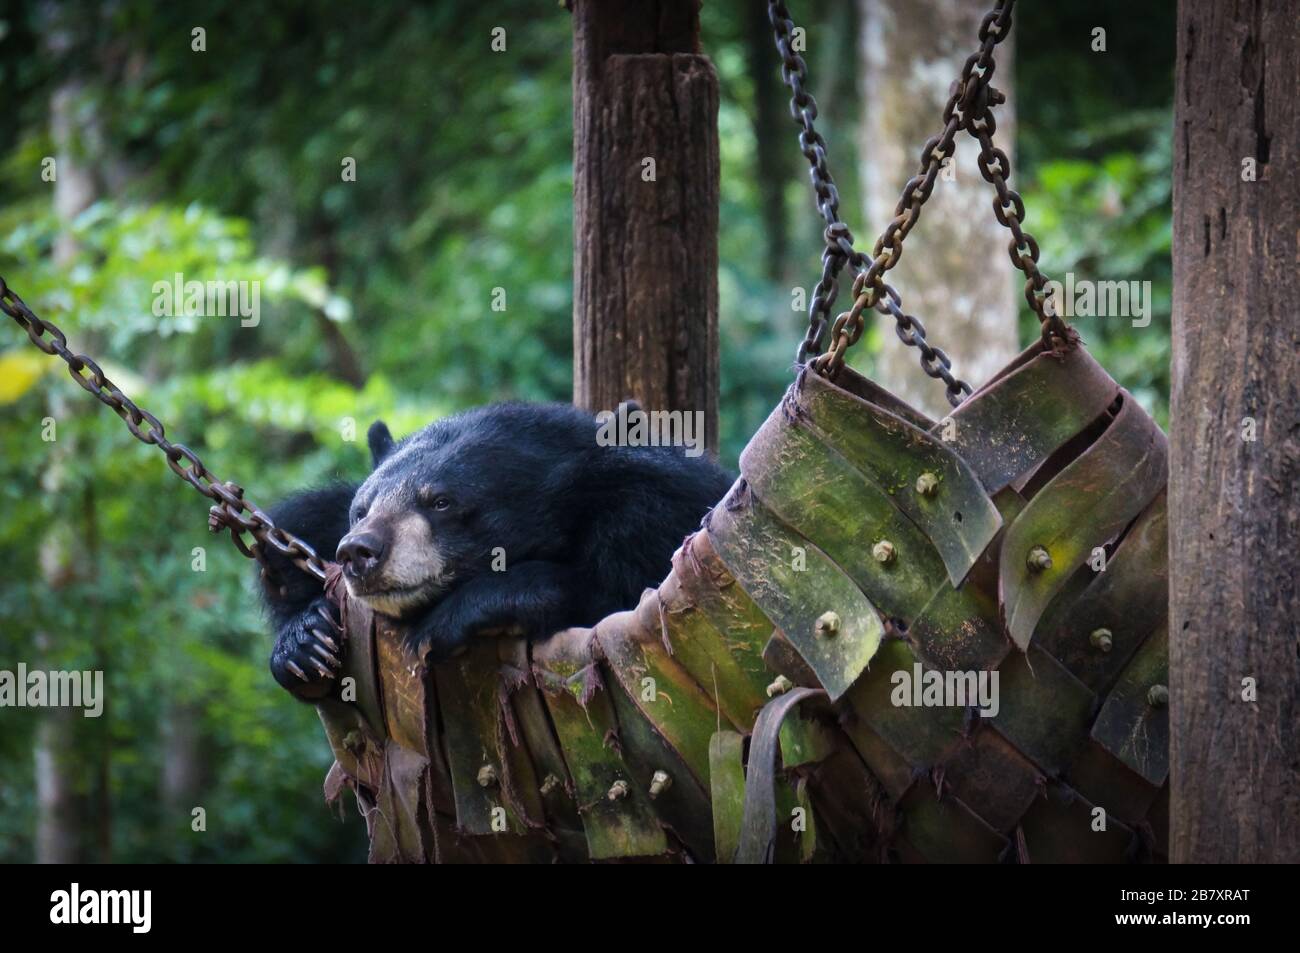 Bär in Hängematte, Laos Stockfotografie - Alamy